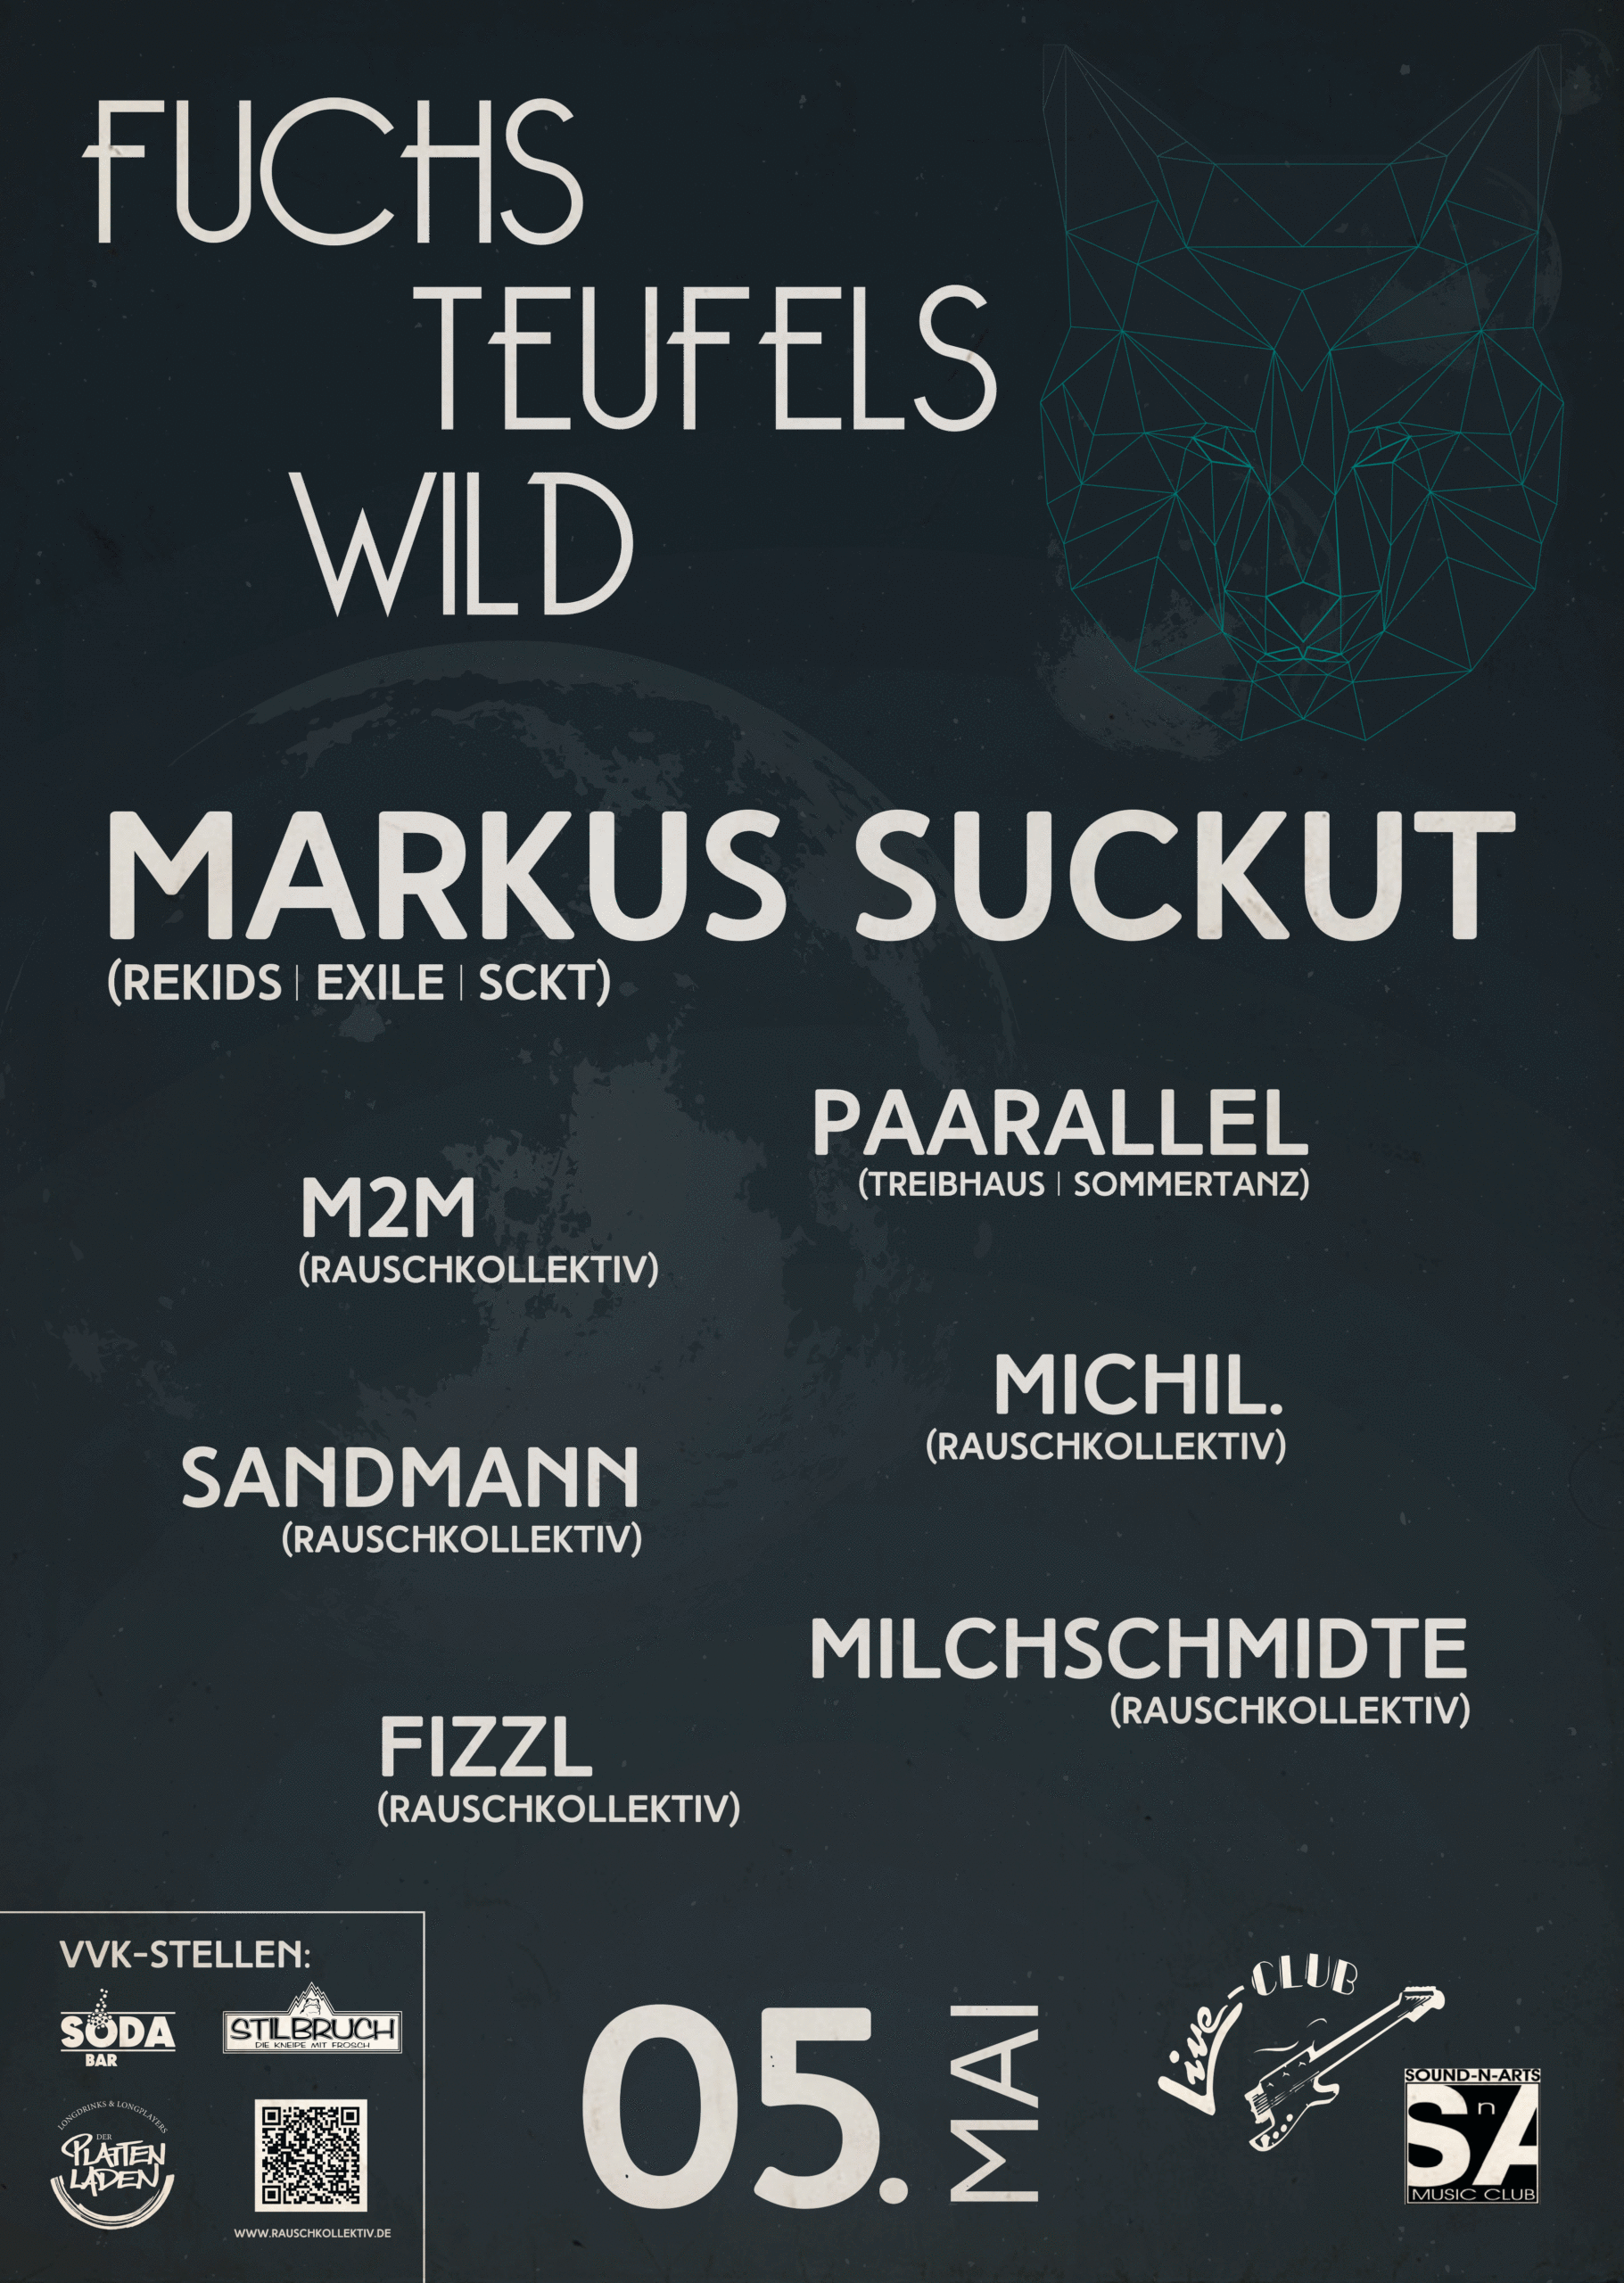 Fr 05. Mai: fuchsteufelswild mit Markus Suckut @ Live-Club und Sound N Arts